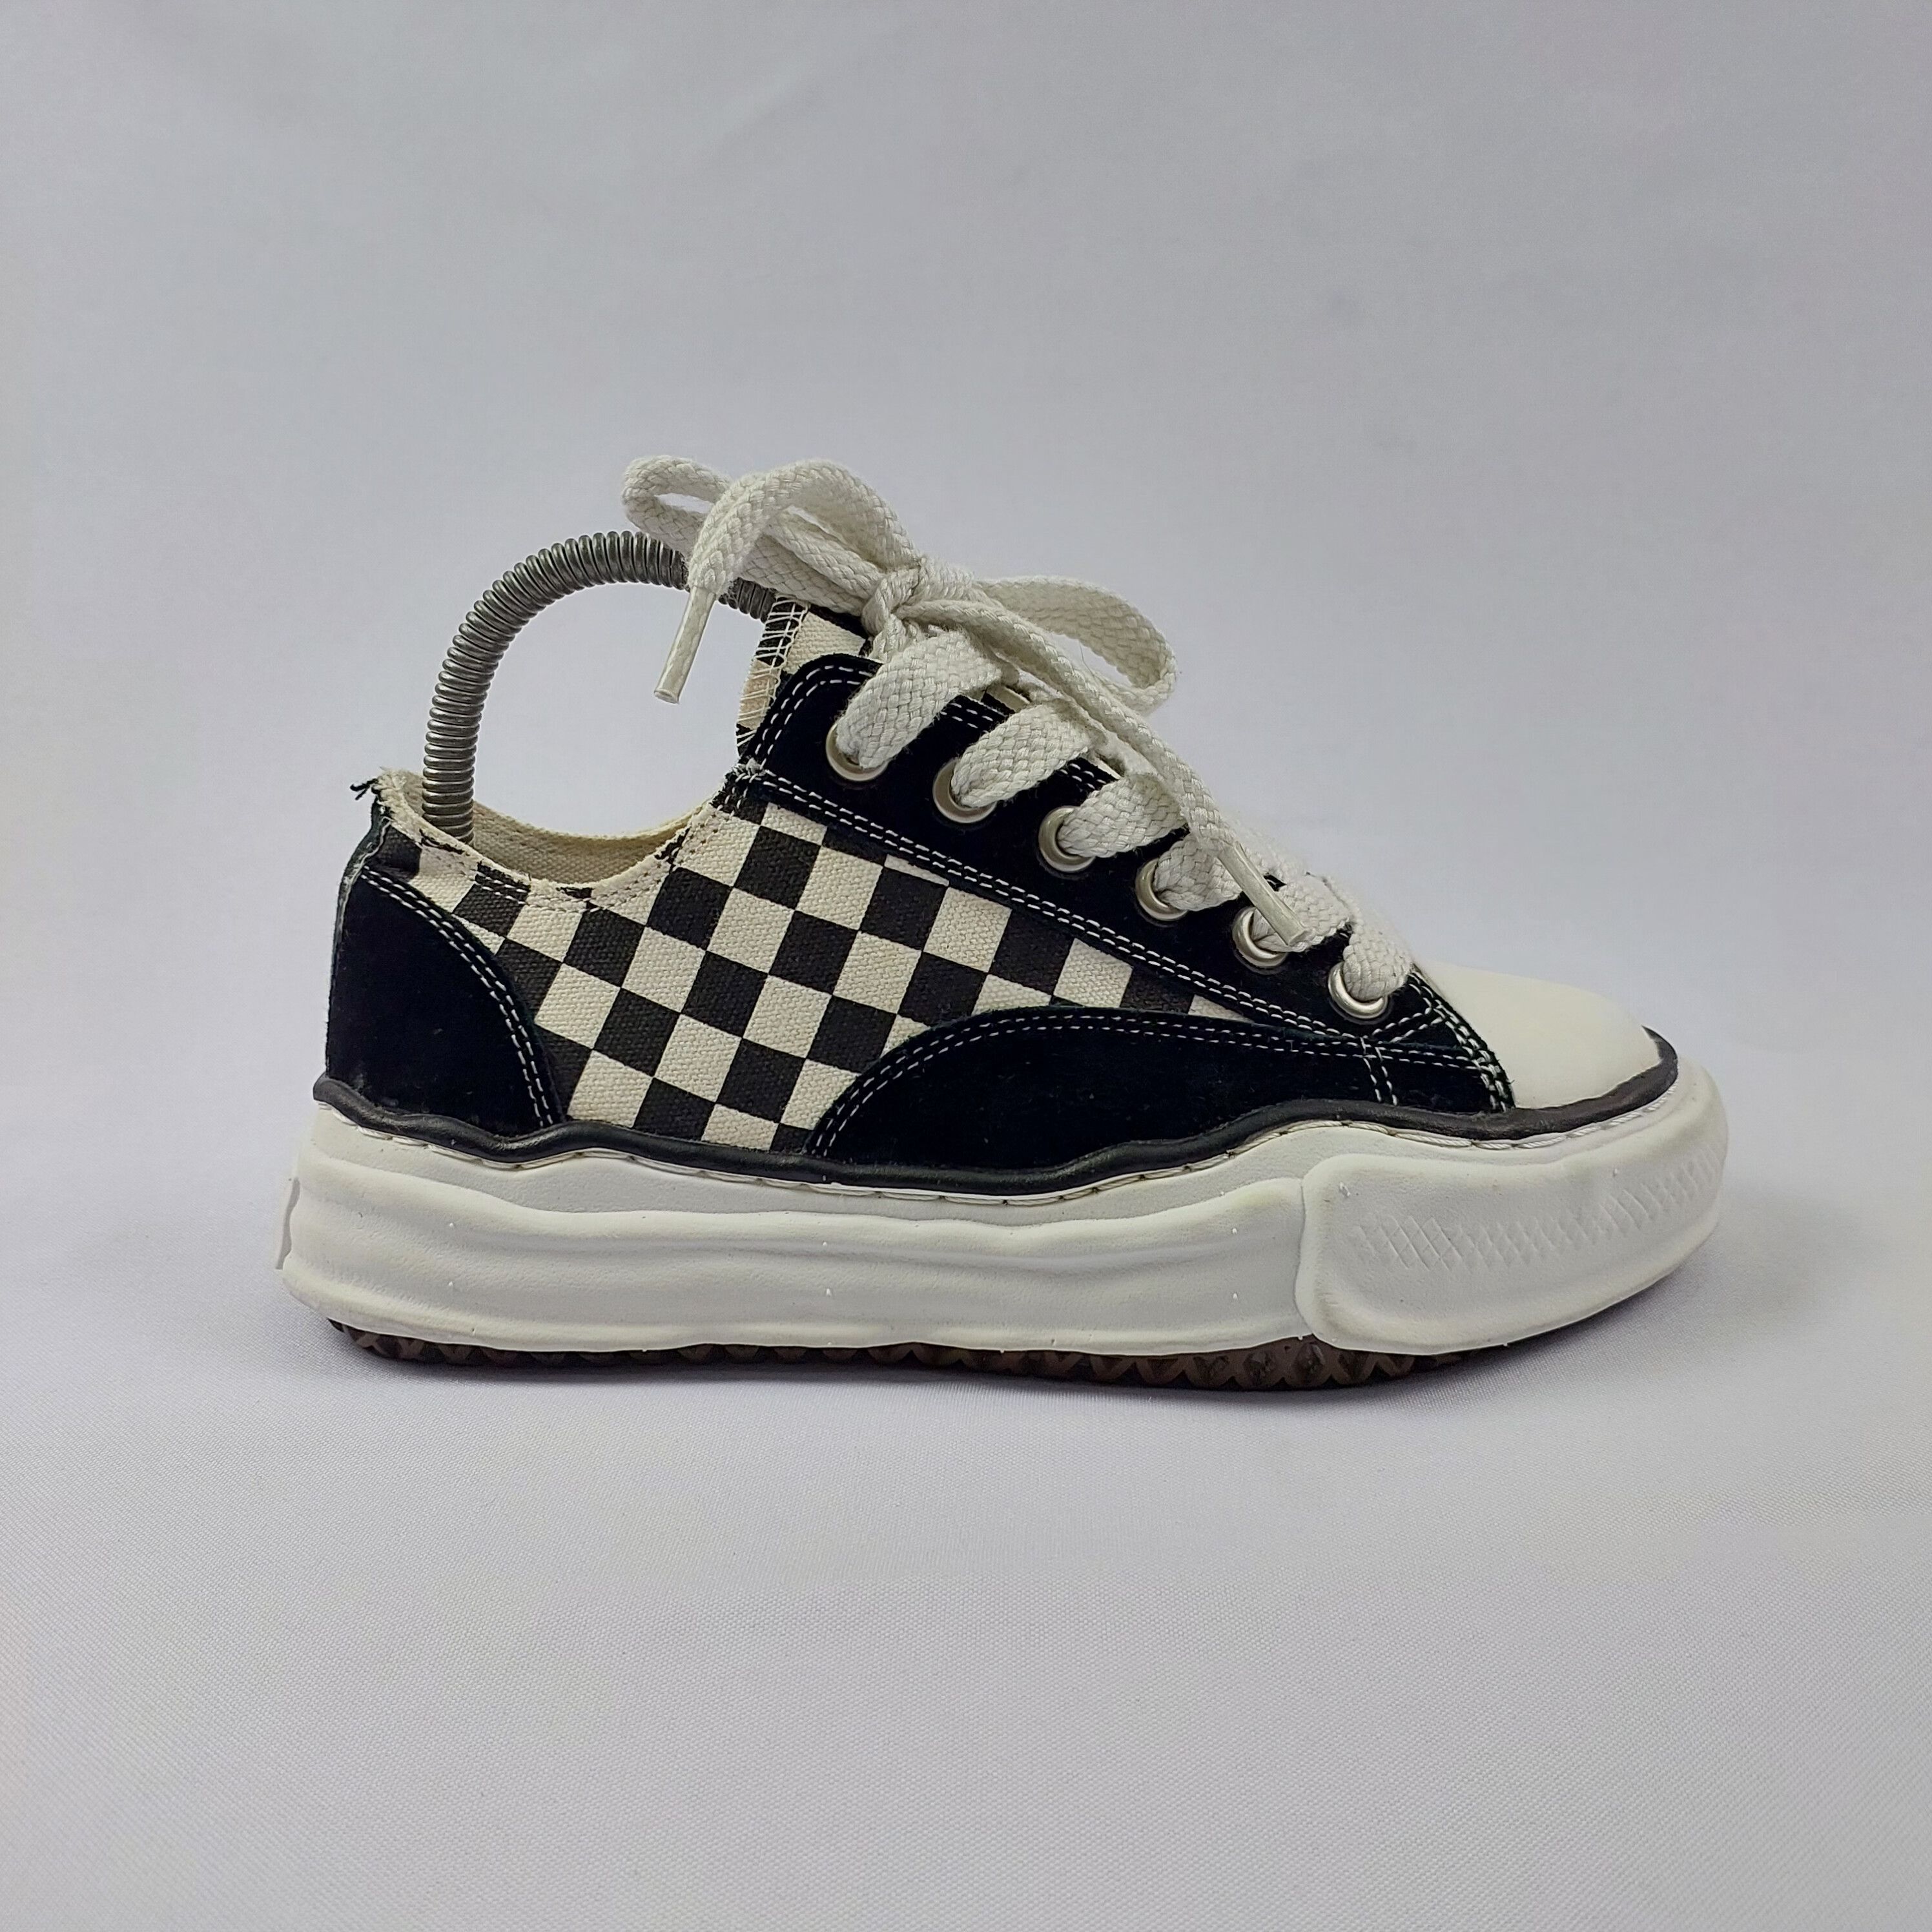 Maison Mihara Yasuhiro - Melted Sneakers - 2